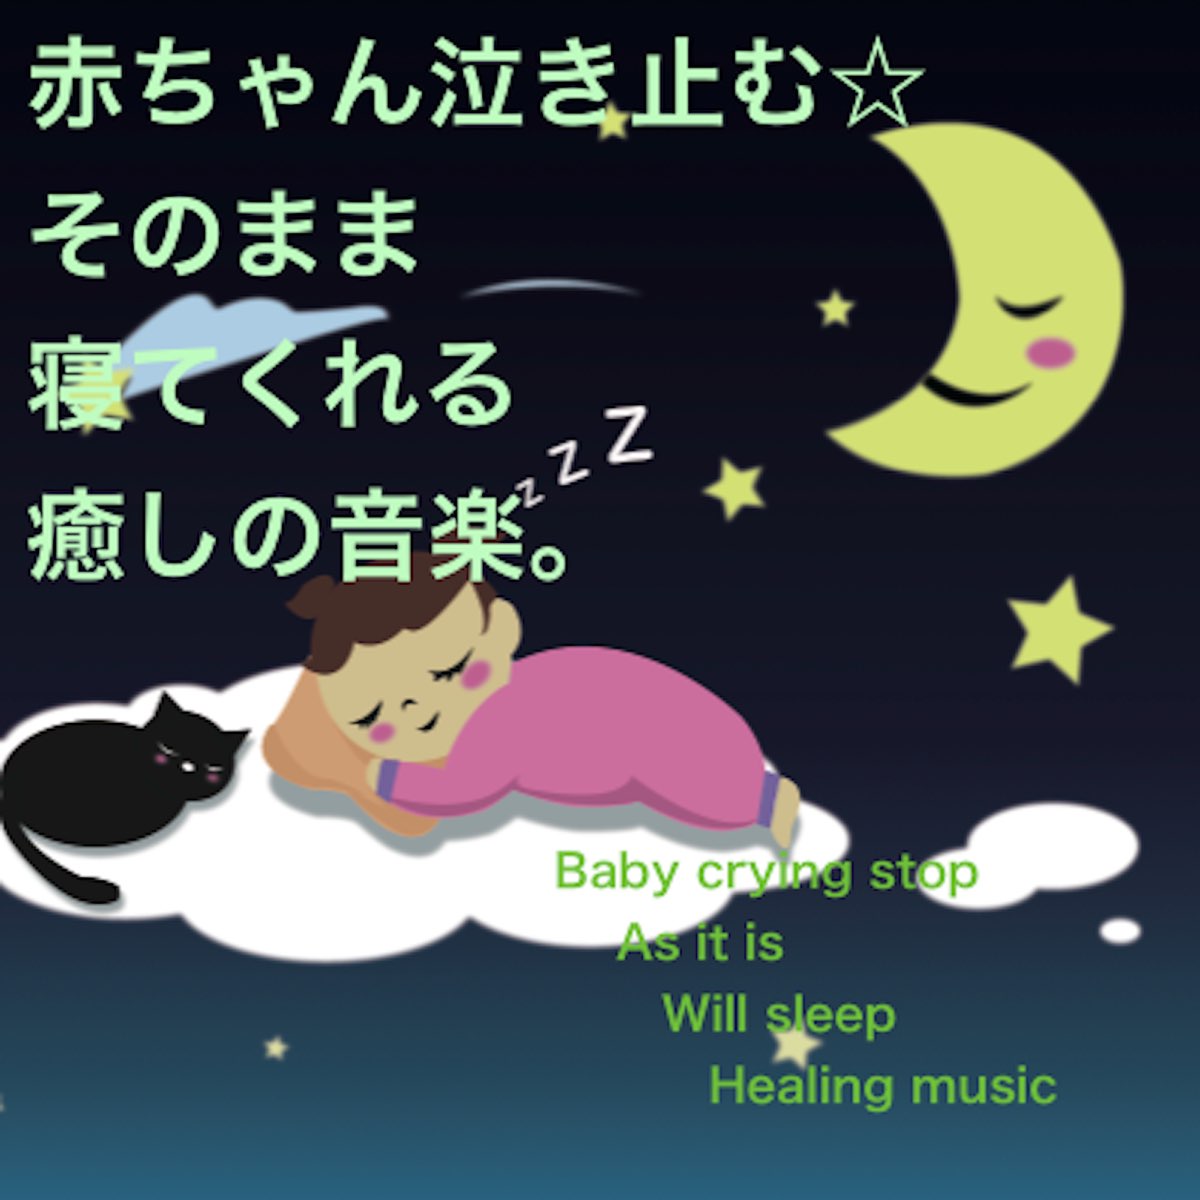 Baby Music 335の 赤ちゃん泣き止む そのまま 寝てくれる 癒しの音楽 Single をapple Musicで